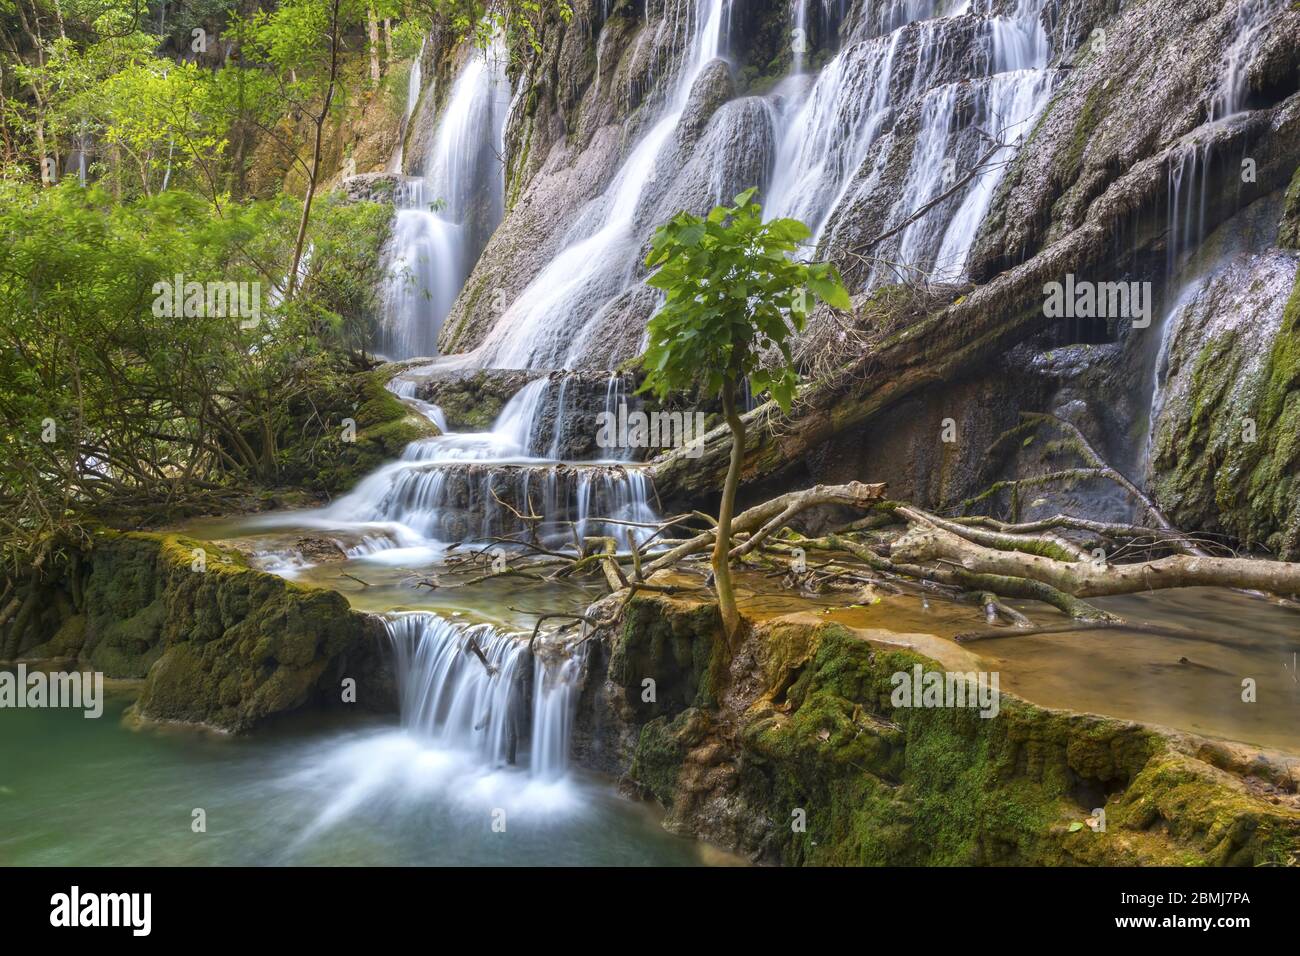 Landschaftlich reizvolle Kuang Si Falls Landschaft, ein wunderschöner Wasserfall in einem üppigen Wald, in der Nähe von Luang Prabang, Laos Südostasien Stockfoto